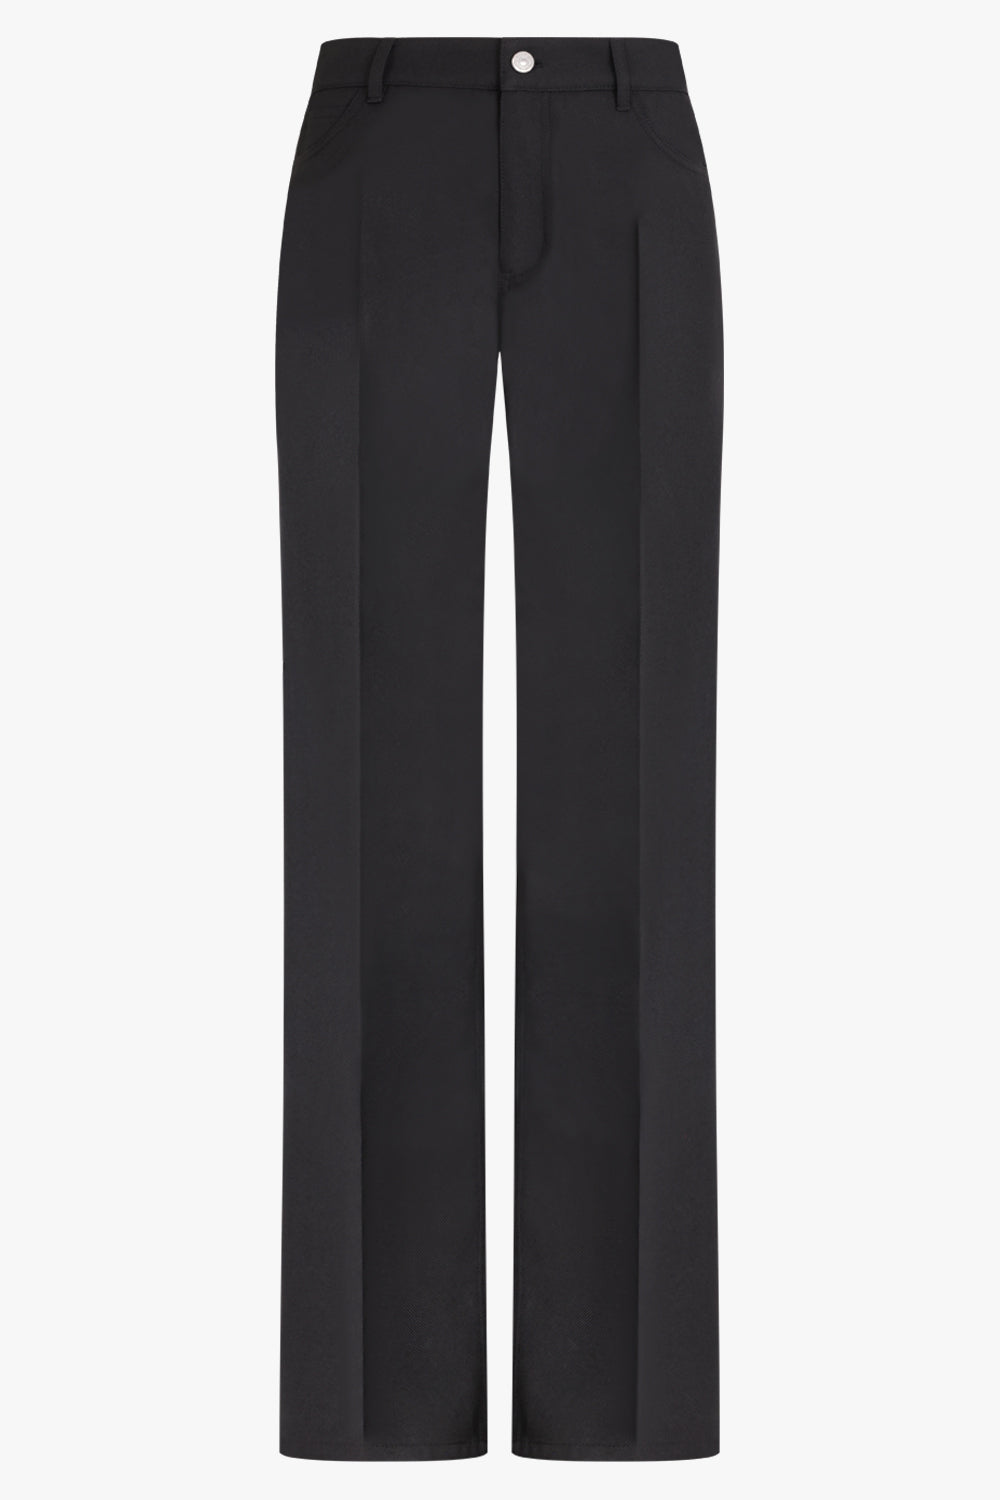 70's Bootcut Workwear Pant | Black